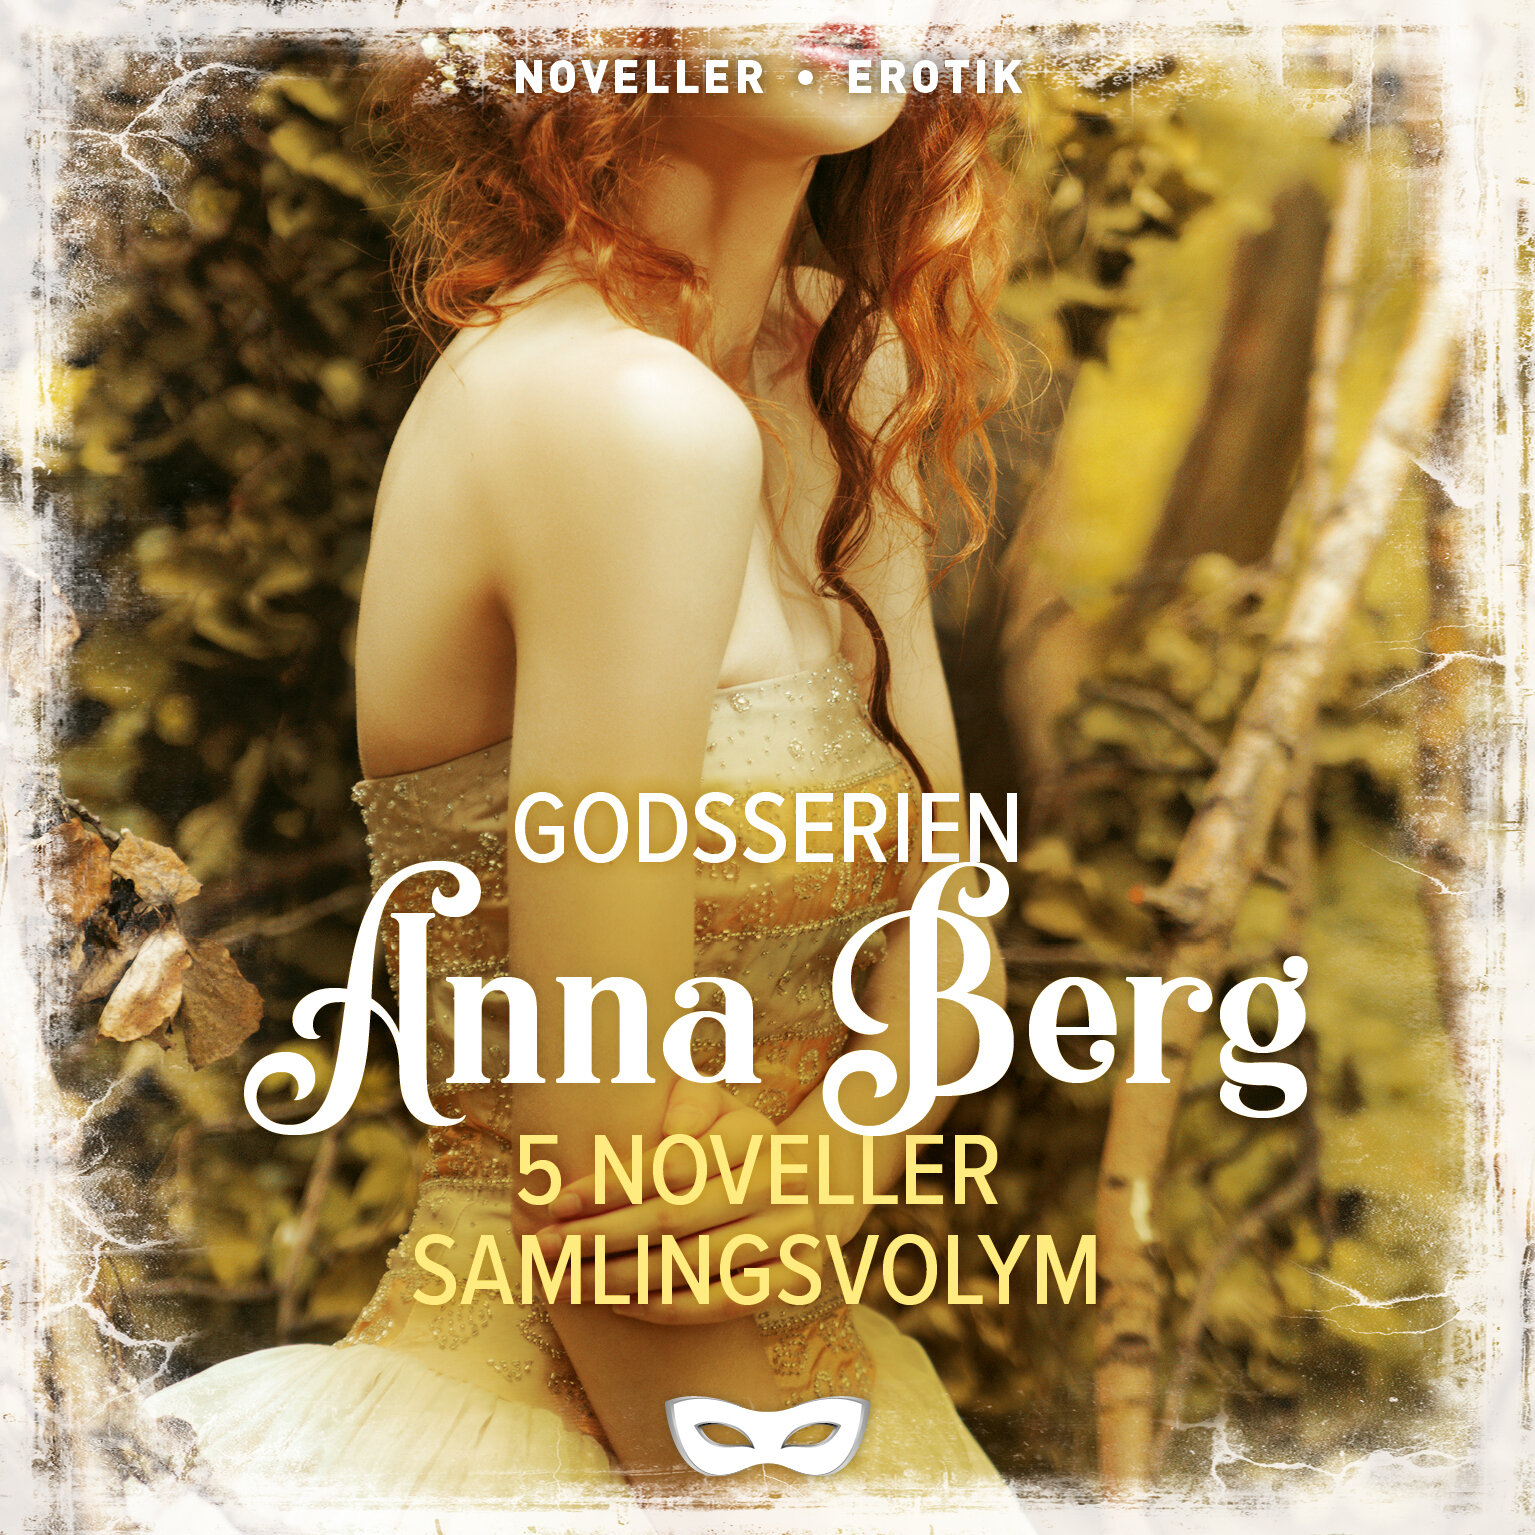 SAMGOD1 Anna Berg Godsserien 5 noveller samlingsvolym omslag audio.jpg